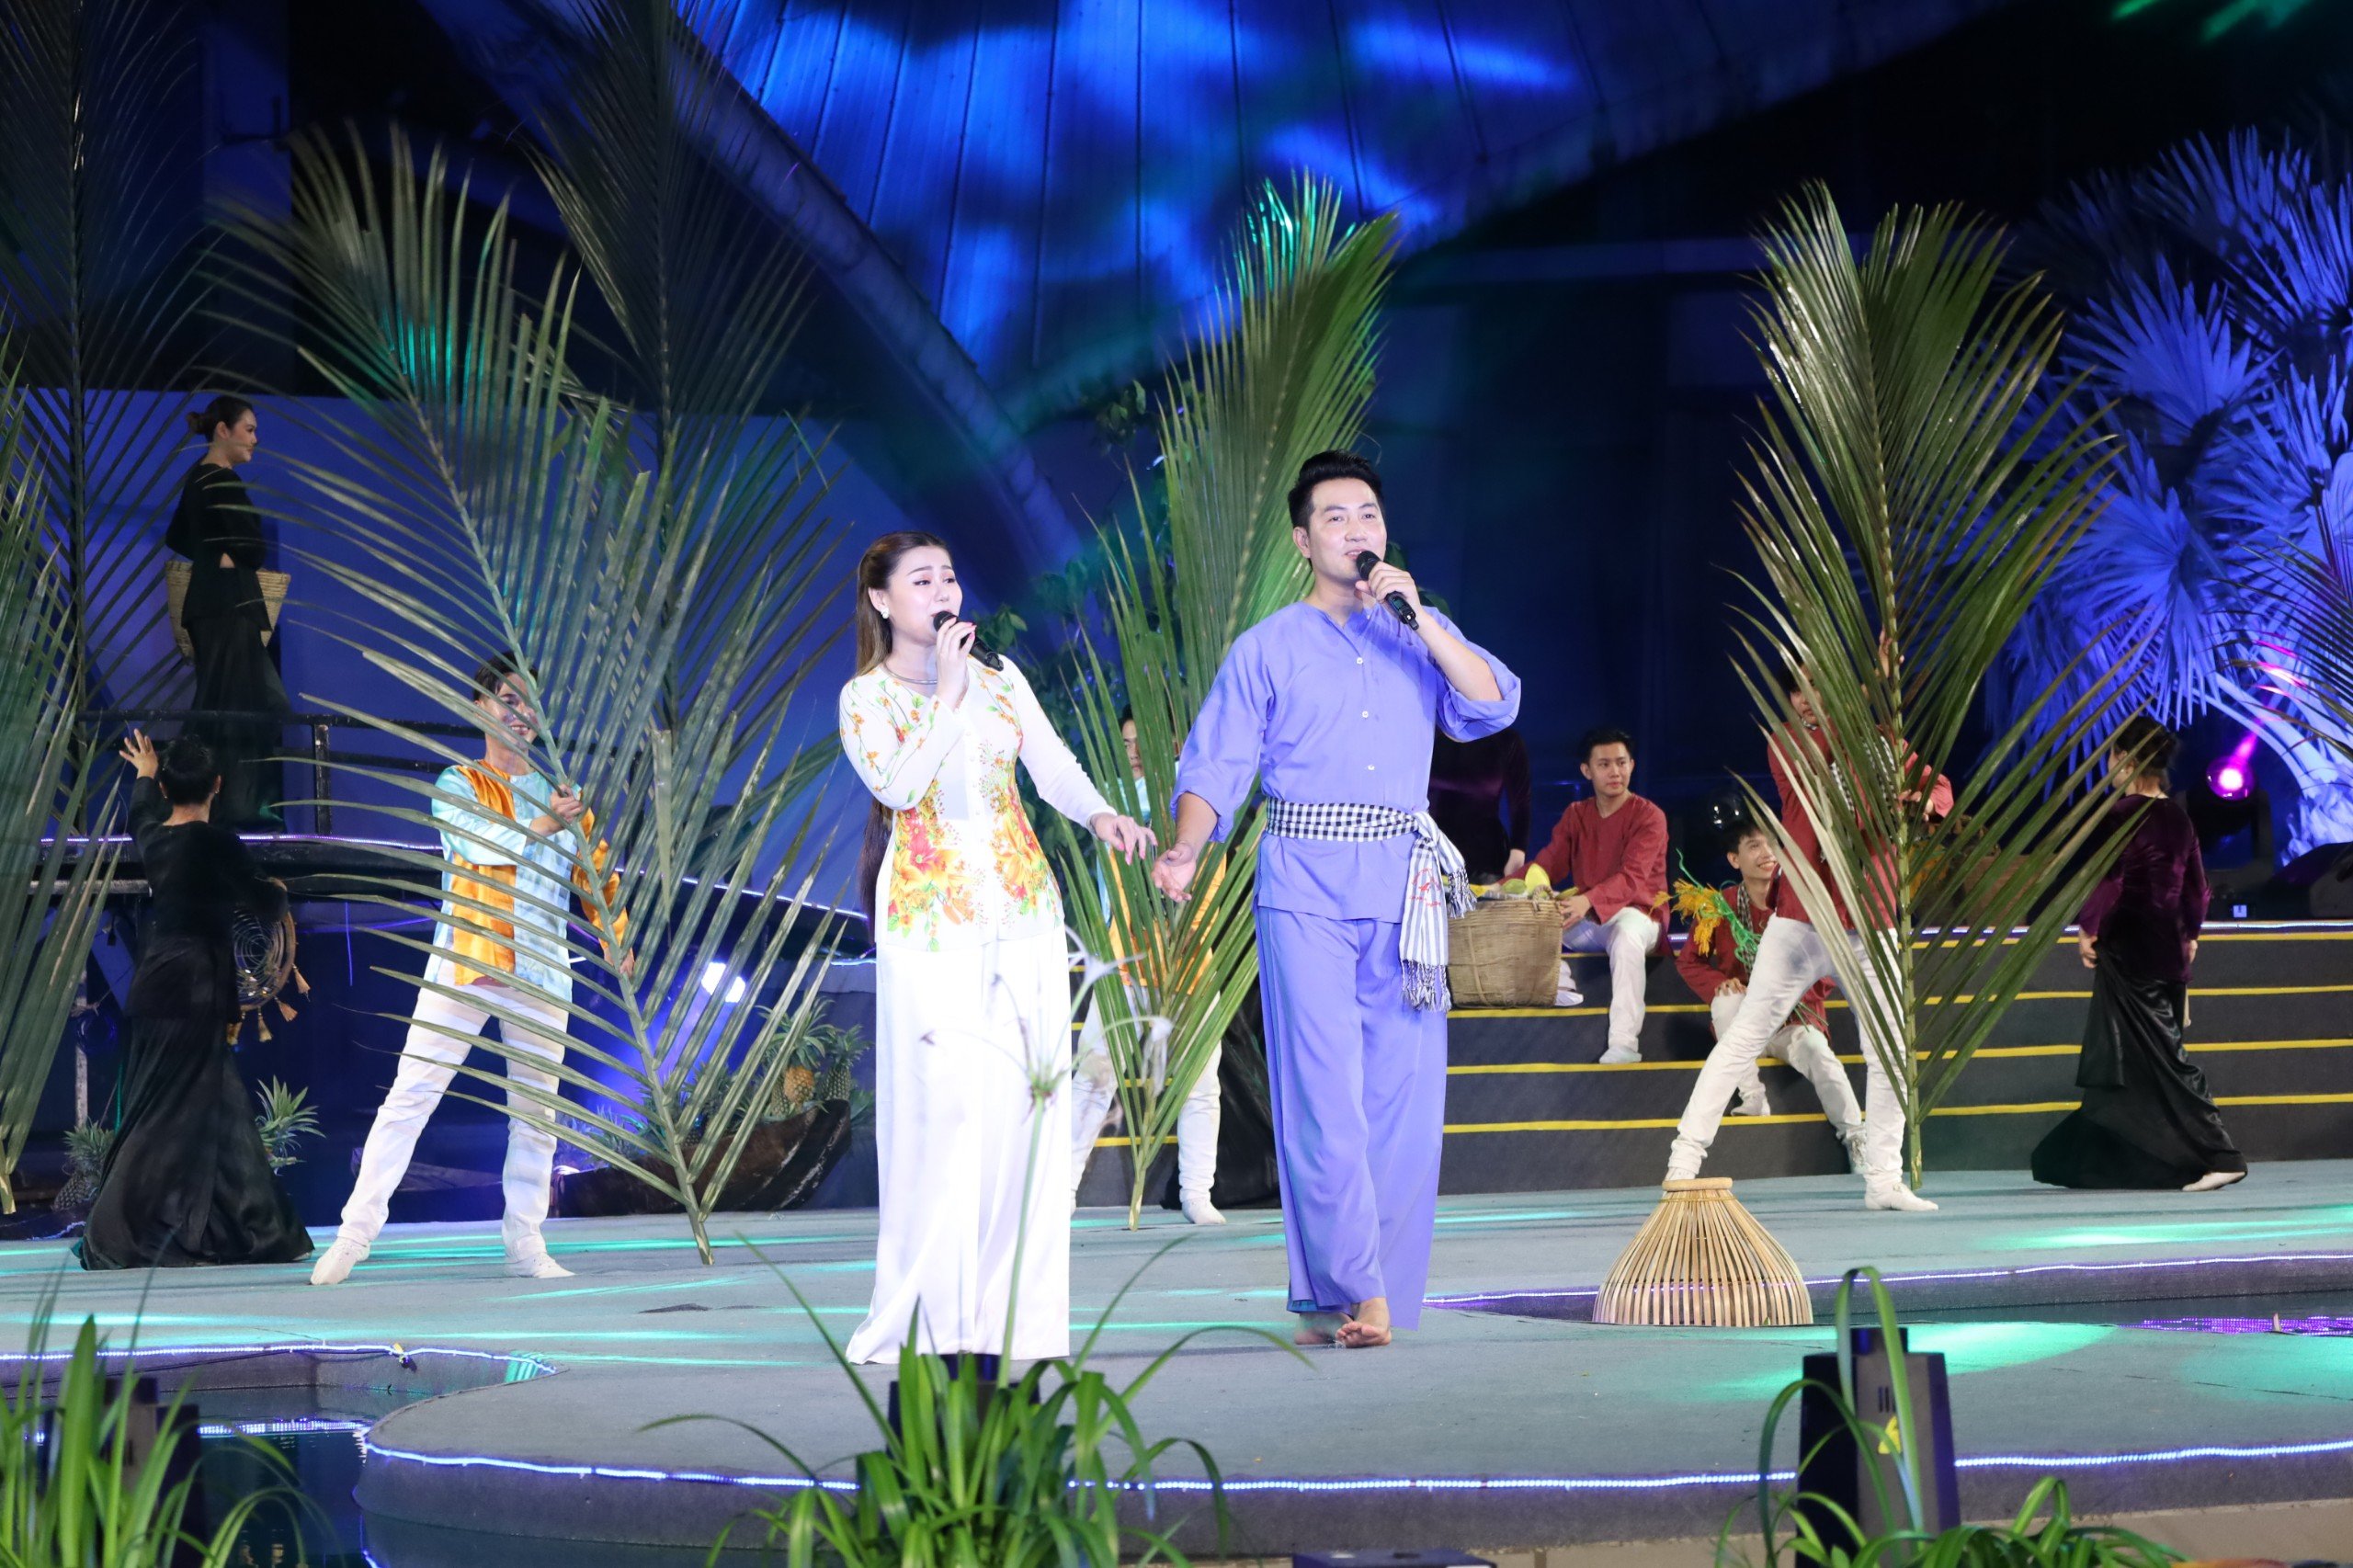 Ca sĩ Nguyễn Phi Hùng, ca sĩ Tiểu Thúy biểu diễn tiết mục mashup Miền Tây Quê Tôi - Tình Quê Miền Tây.